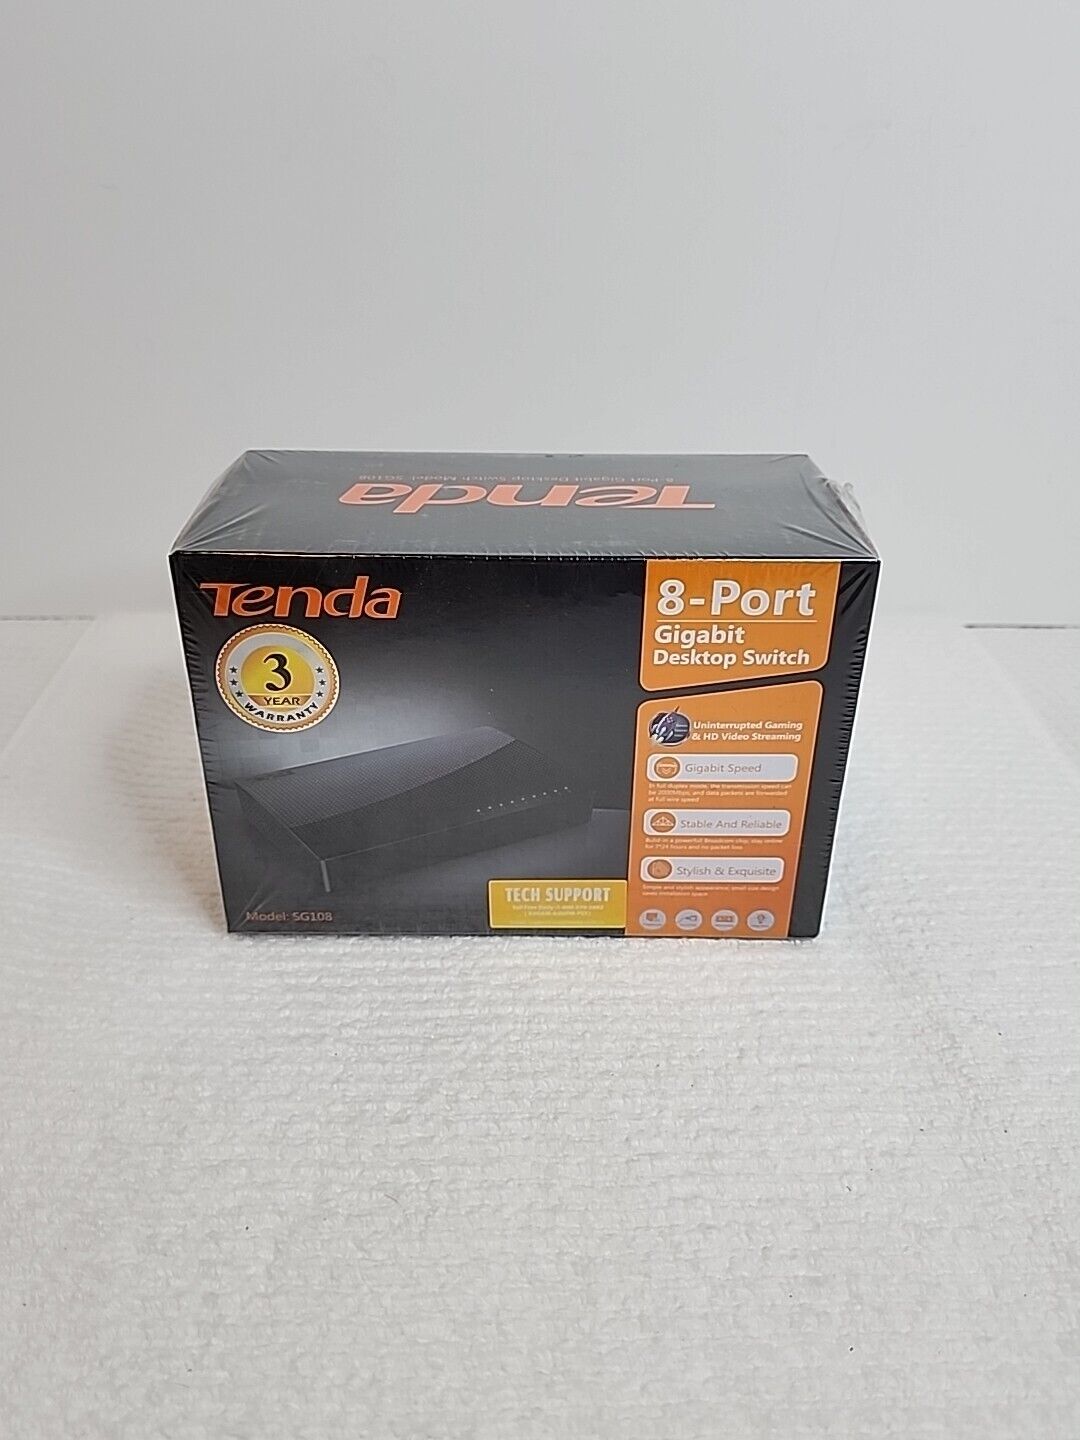 Tenda 8-Port Gigabit Desktop Switch SG108 New